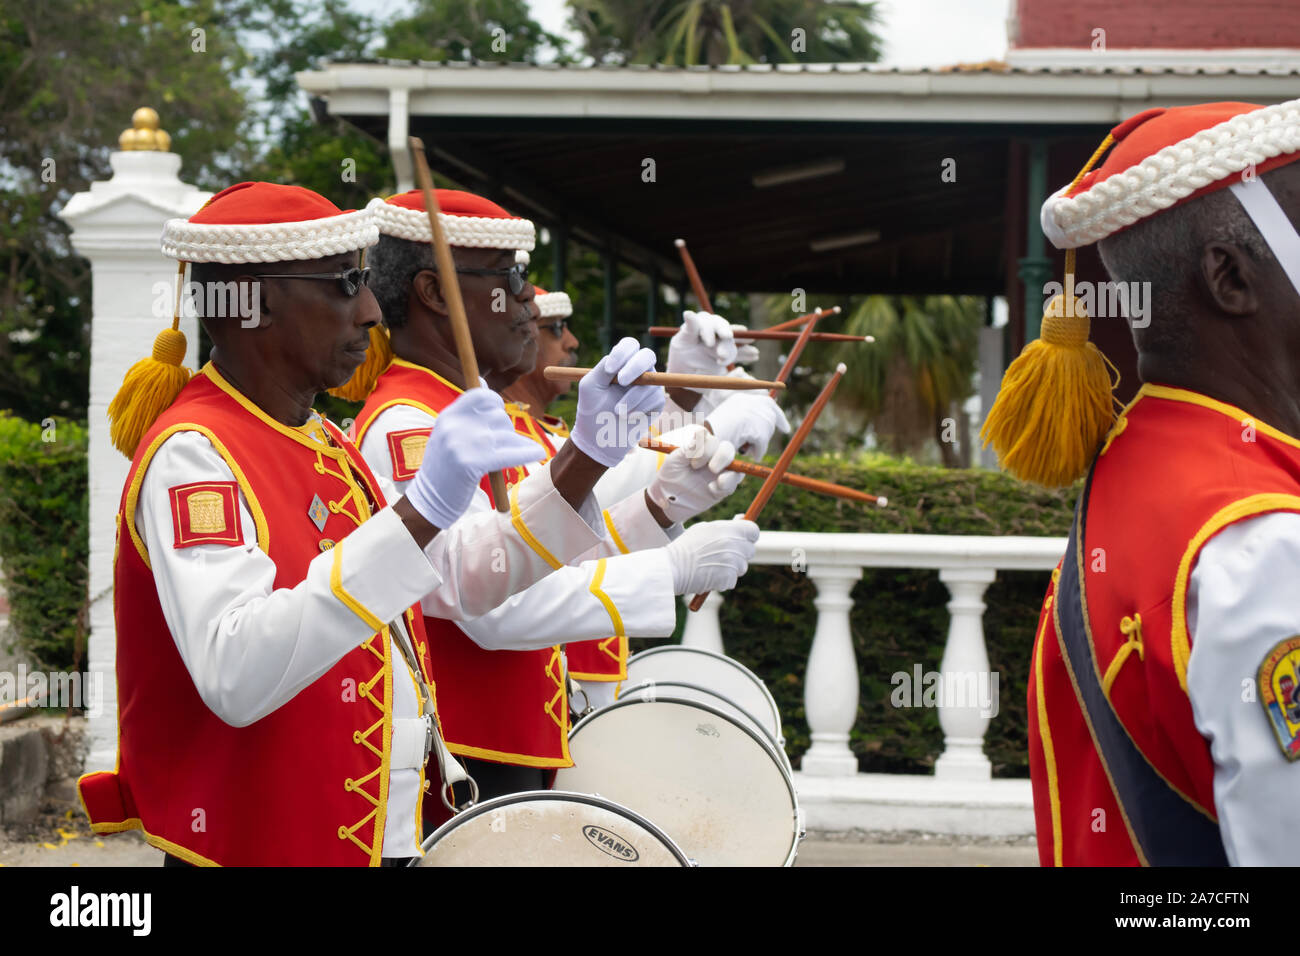 L'île de la Barbade relève de la garde à l'historic Garrison Savannah. Une rangée de batteurs en uniforme rouge et les baguettes en l'air Banque D'Images